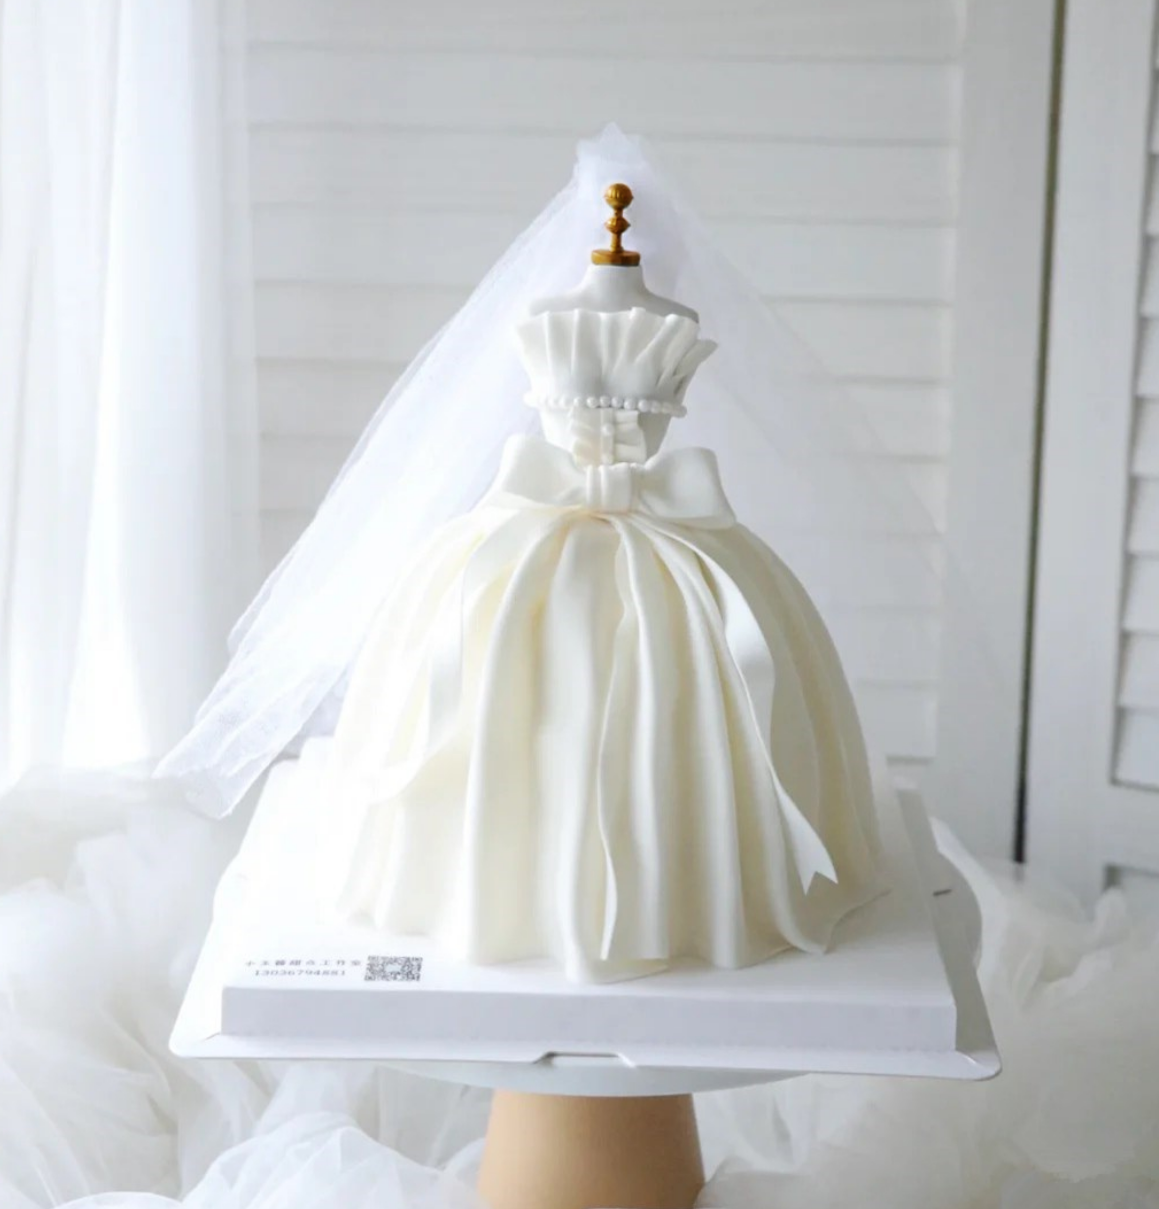 七夕情人节蛋糕装饰摆件创意婚纱模特衣架白色头纱结婚纪念日装饰